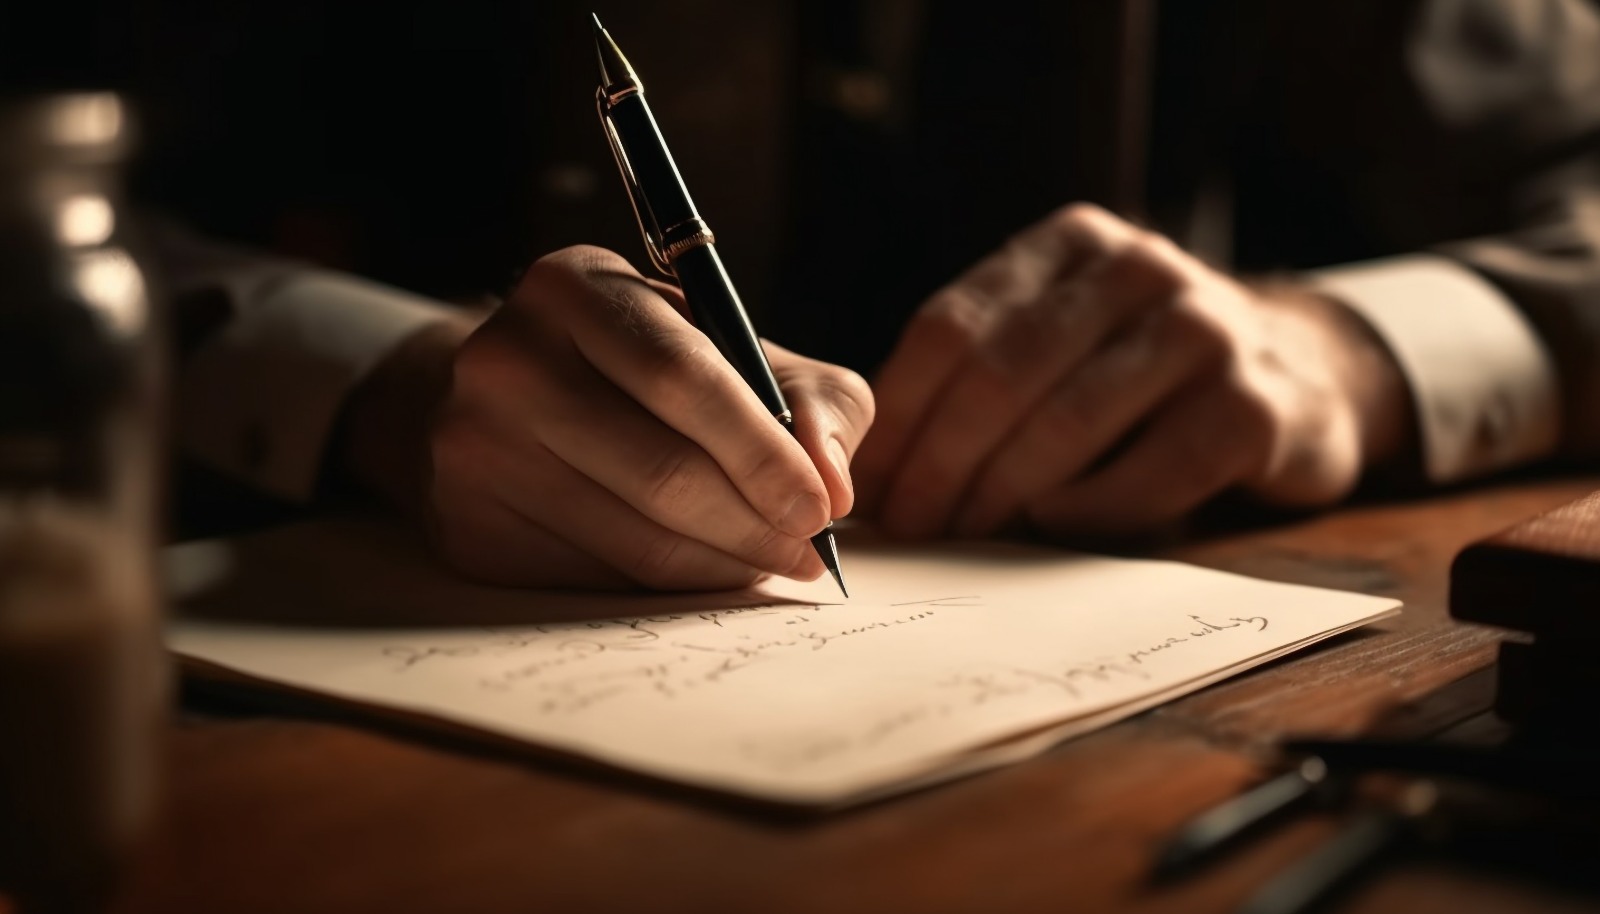 Uma pessoa assinando um Contrato de Administração de Imóveis, iluminada por uma luz suave que destaca a mão segurando a caneta e o texto no papel.